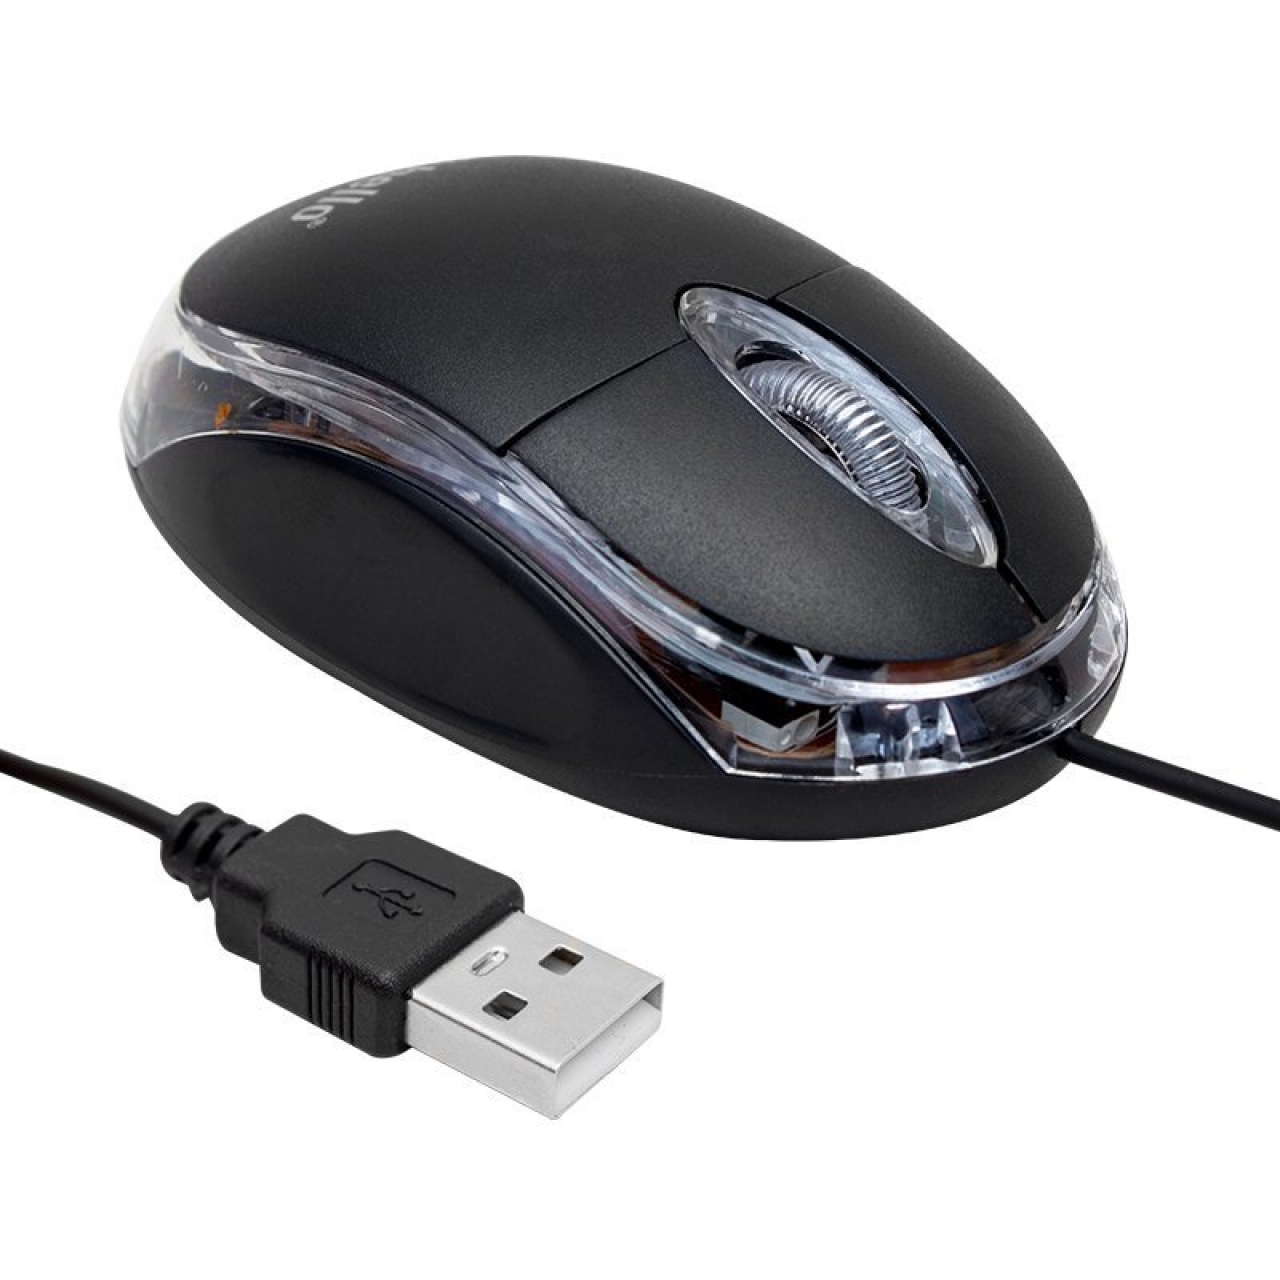 Hello HL18736 Optik Işıklı 800 DPI Kablolu Mouse